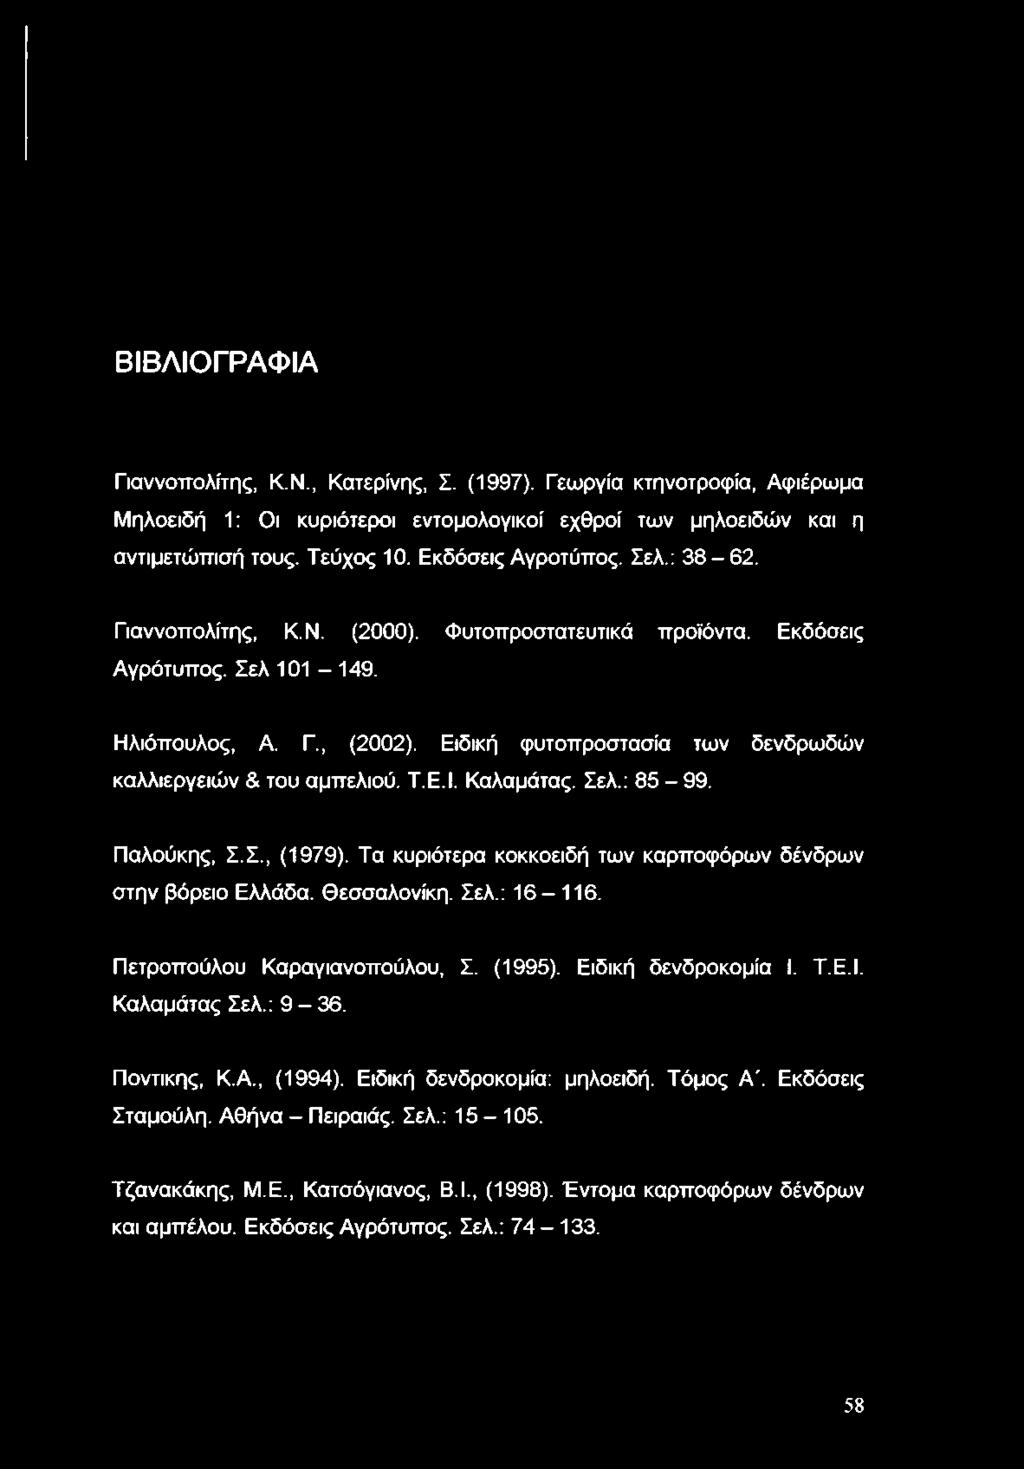 Ειδική φυτοπροστασία των δενδρωδών καλλιεργειών & του αμπελιού. Τ.Ε.Ι. Καλαμάτας. Σελ.: 85-99. Παλούκης, Σ.Σ., (1979). Τα κυριότερα κοκκοειδή των καρποφόρων δένδρων στην βόρειο Ελλάδα. Θεσσαλονίκη.